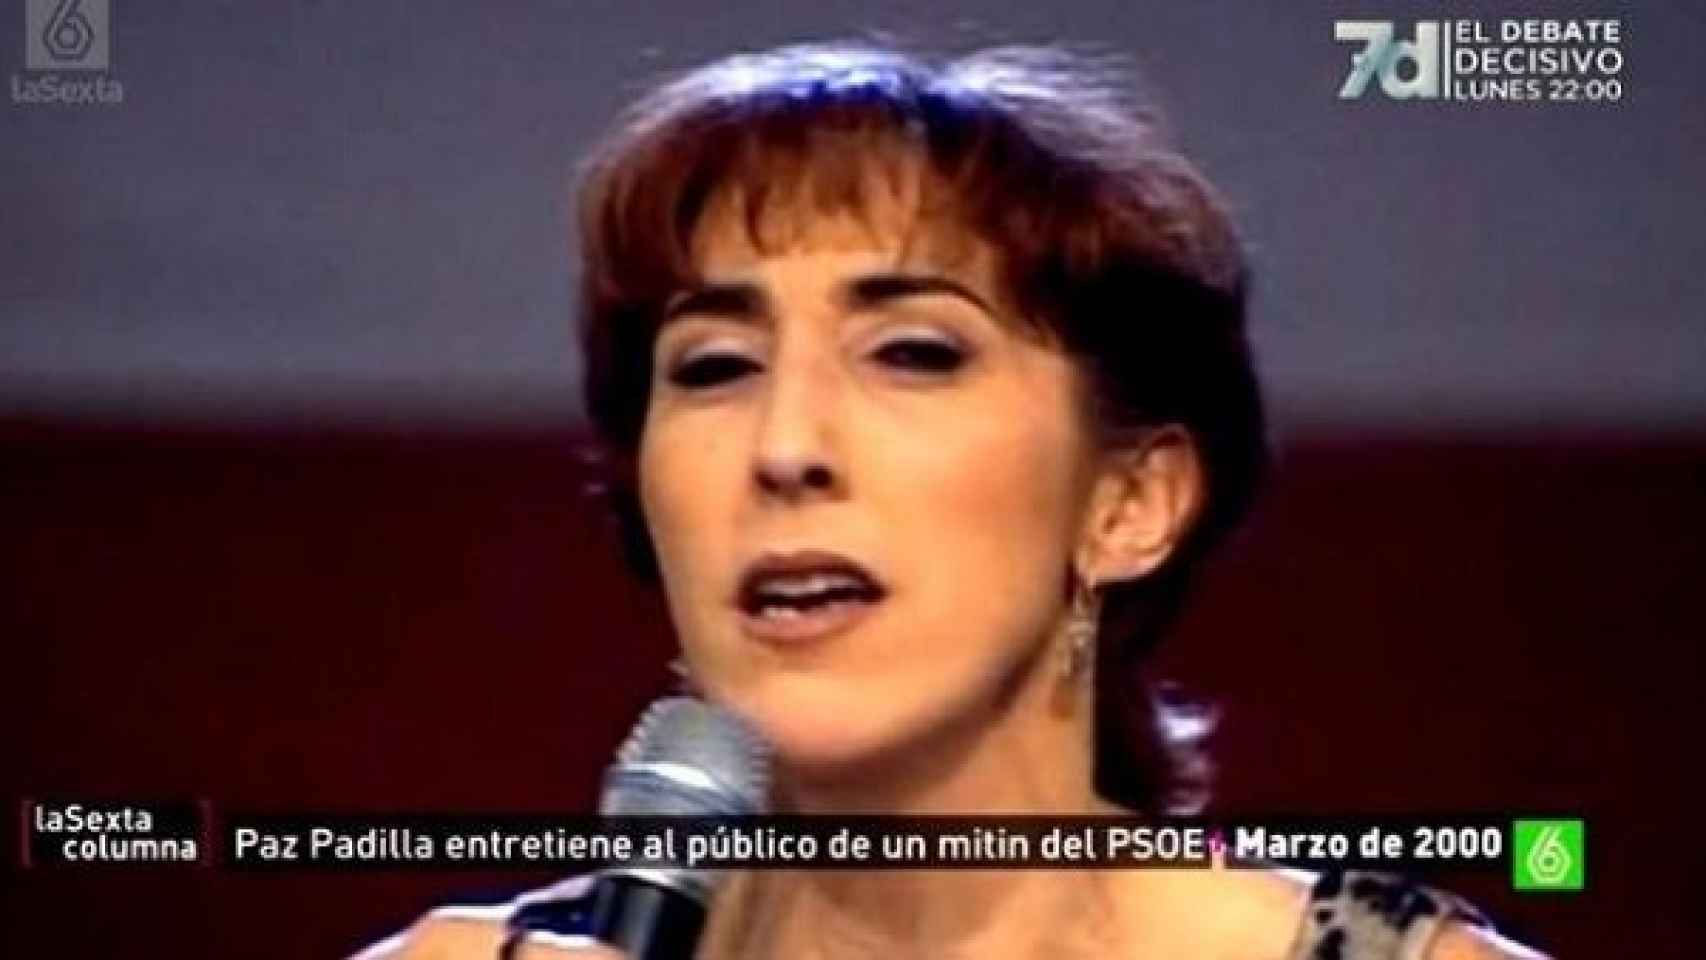 Paz Padilla participó en un mitin del PSOE en el 2000.